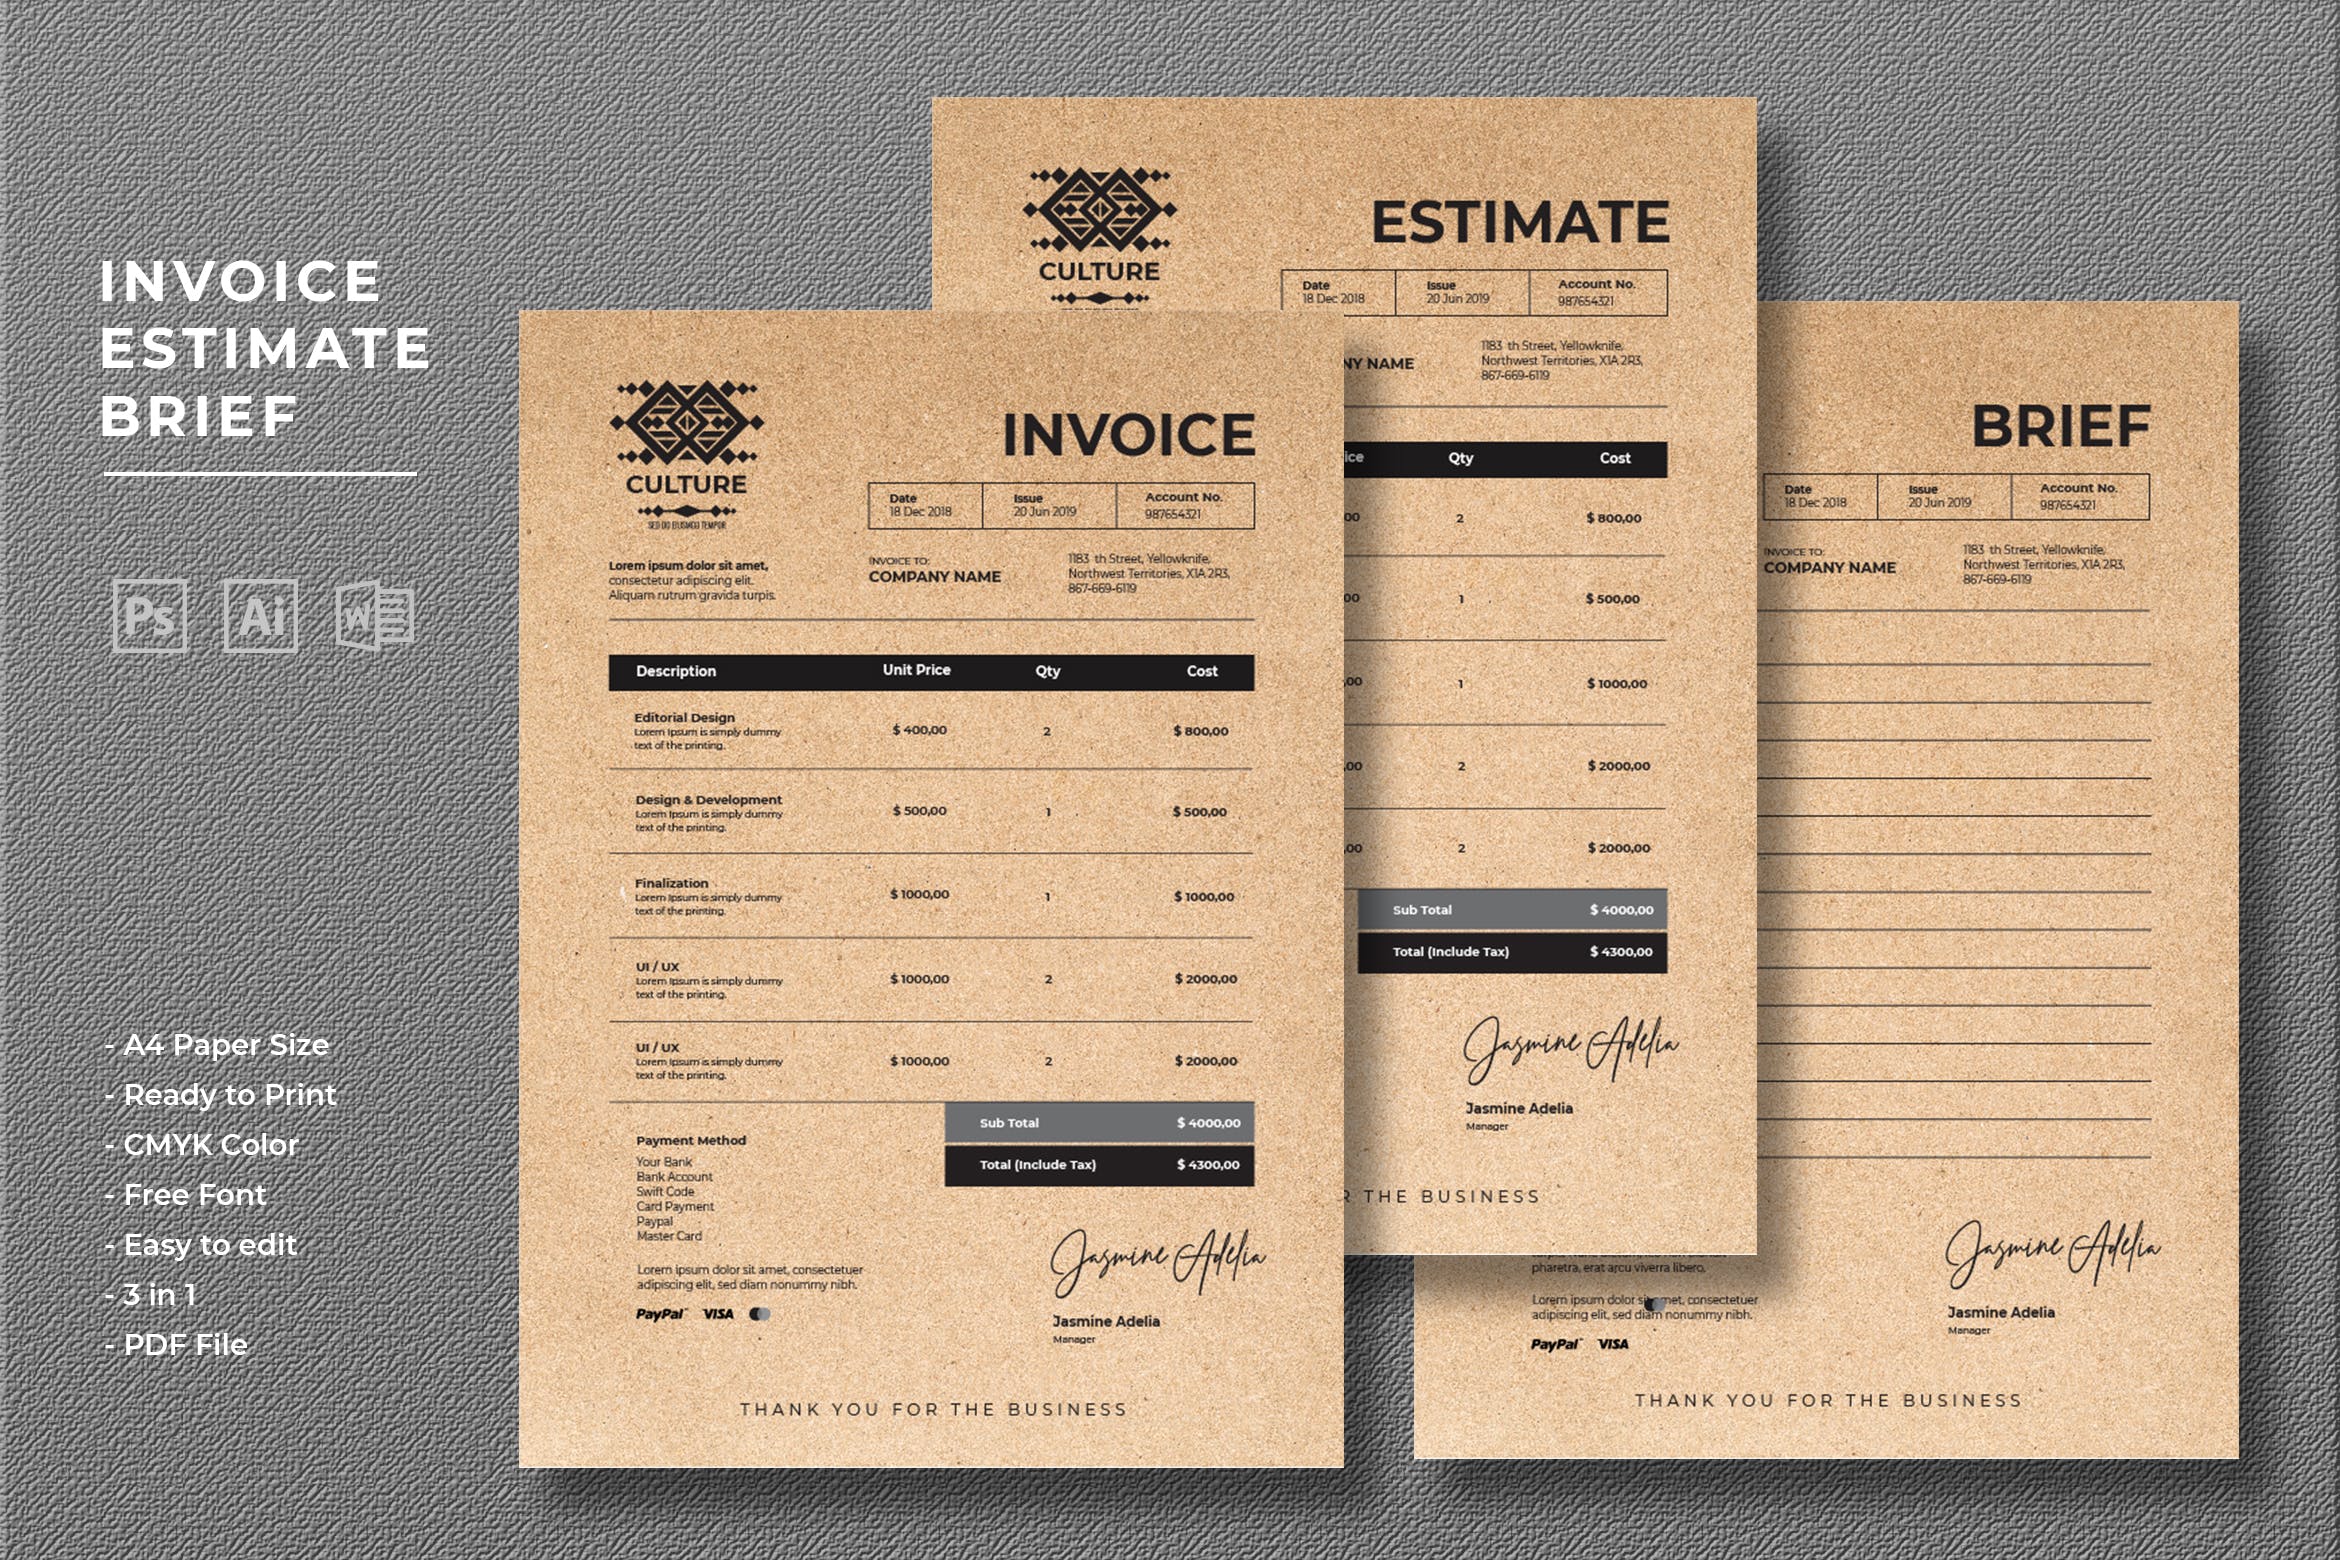 复古牛皮纸背景账单发票单据设计模板 Invoice Estimate Brief插图